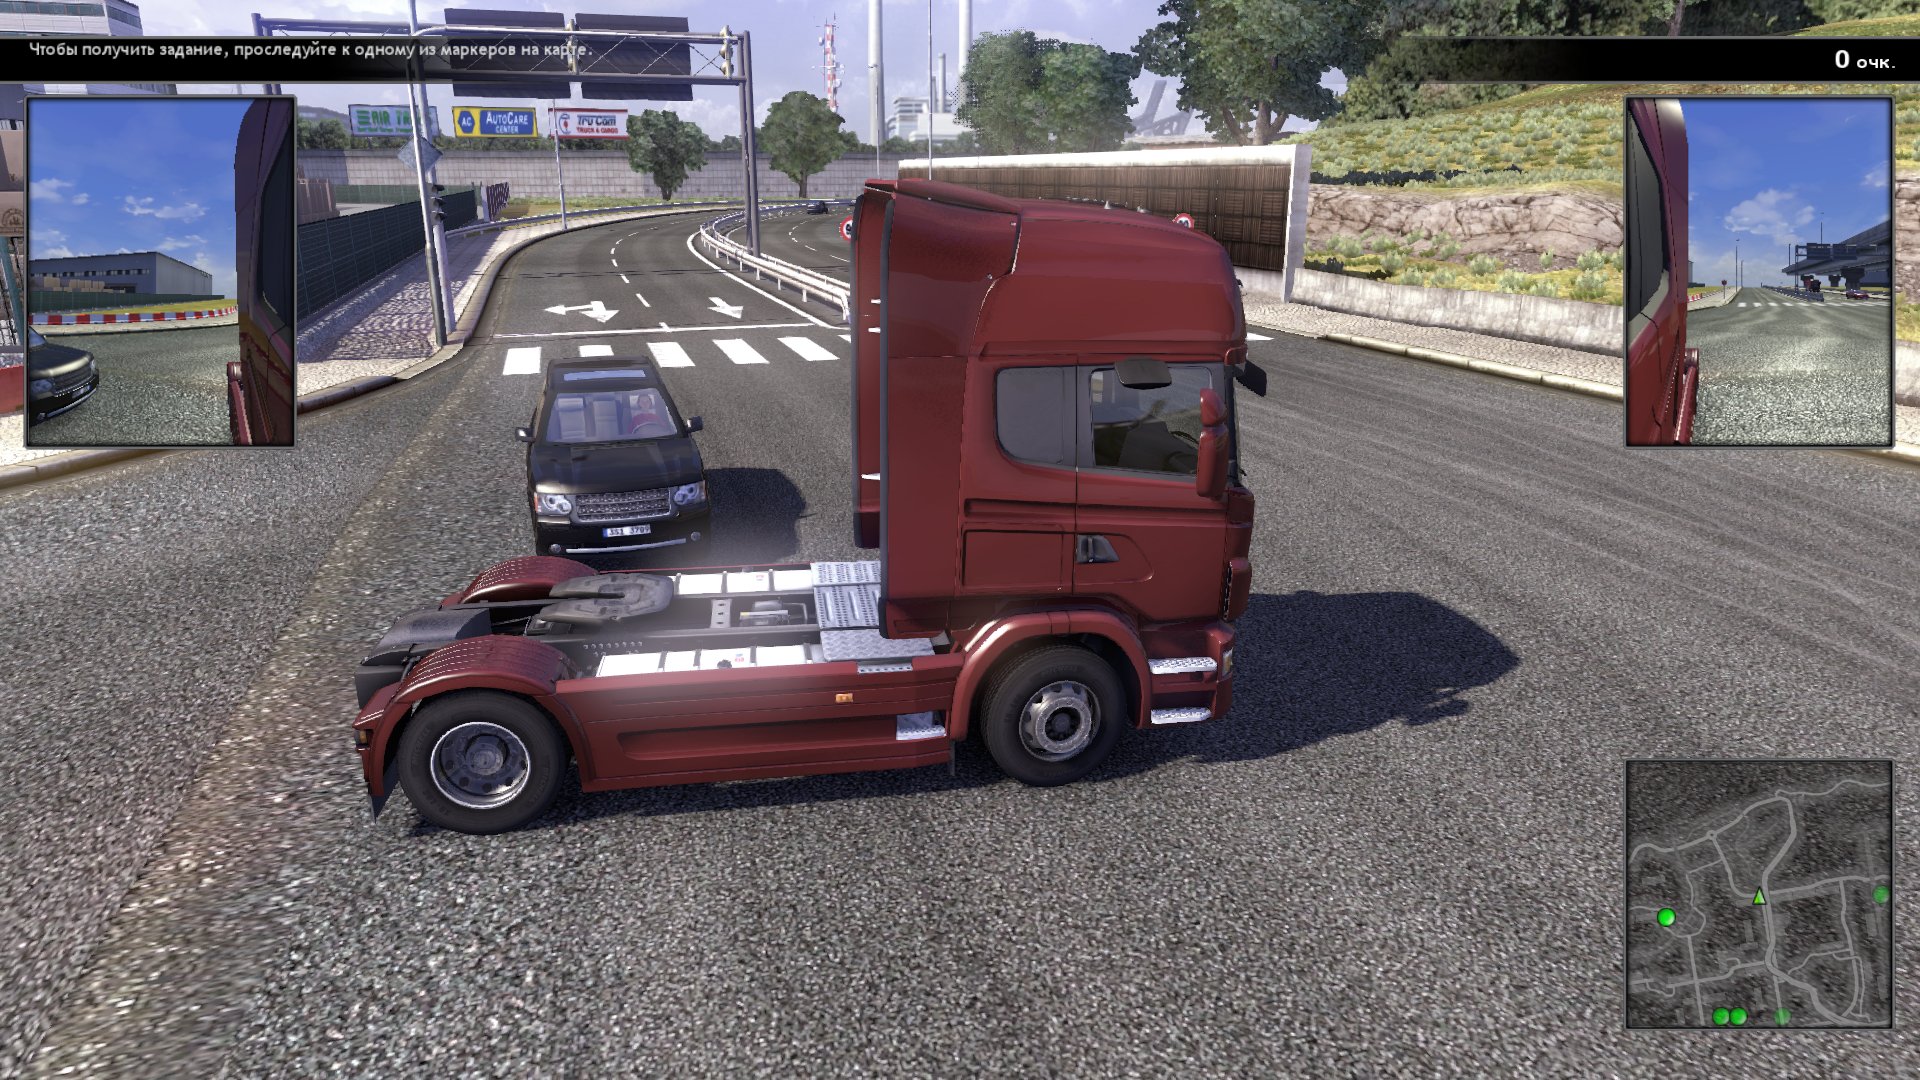 Игра вождения грузовика. Игра Scania Truck Driving Simulator. Скания трак драйв симулятор. Scania Truck Driving Simulator 2. Scania.Truck Driving Simulator.v 1.5.0.